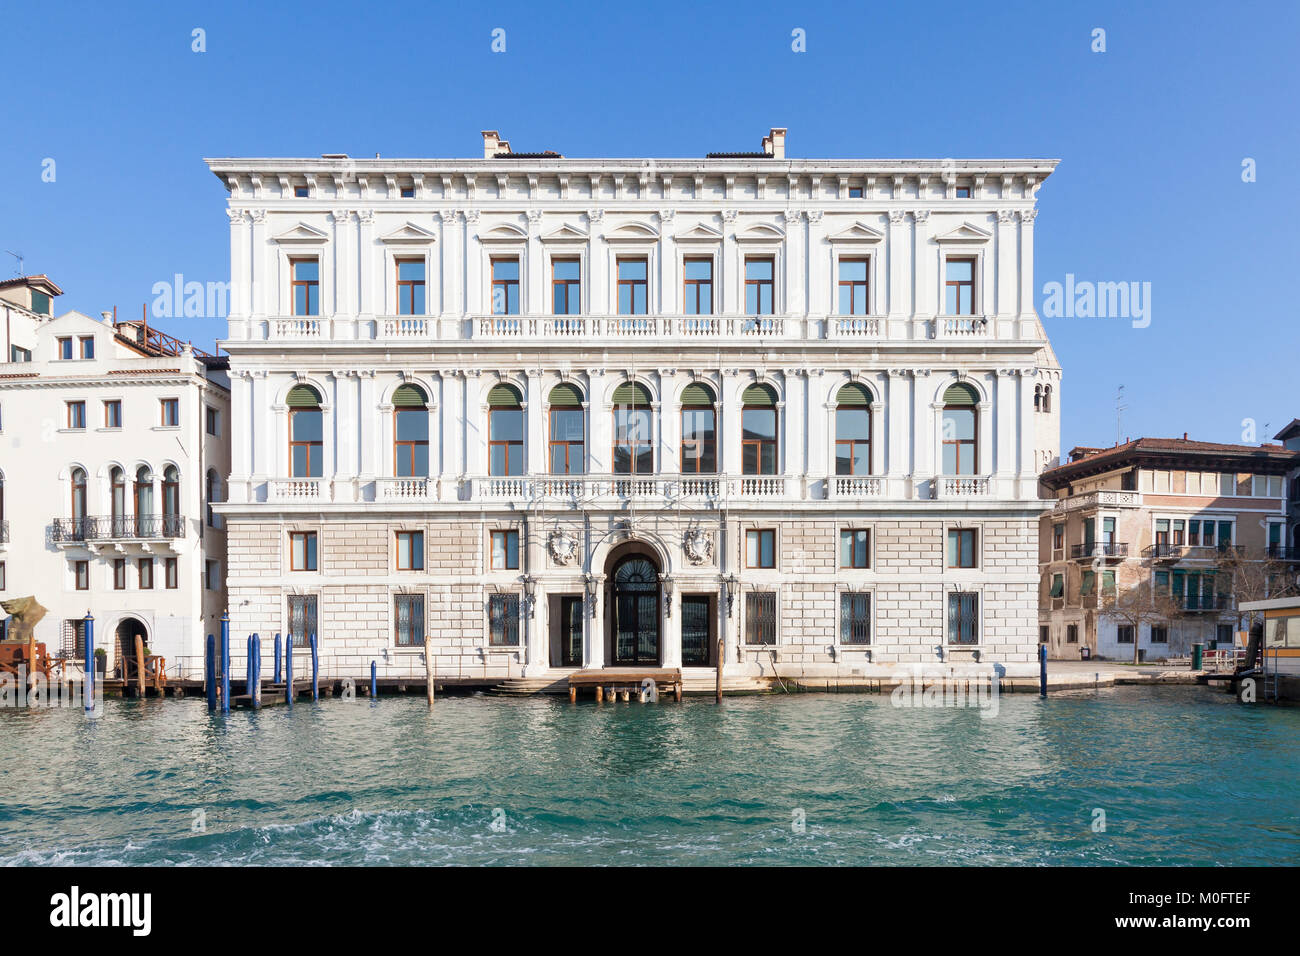 Fachada exterior del Palazzo Grassi, el Grand Canal, San Marco, Venecia, Véneto, Italia, un museo de arte contemporáneo y el centro de exposiciones Foto de stock